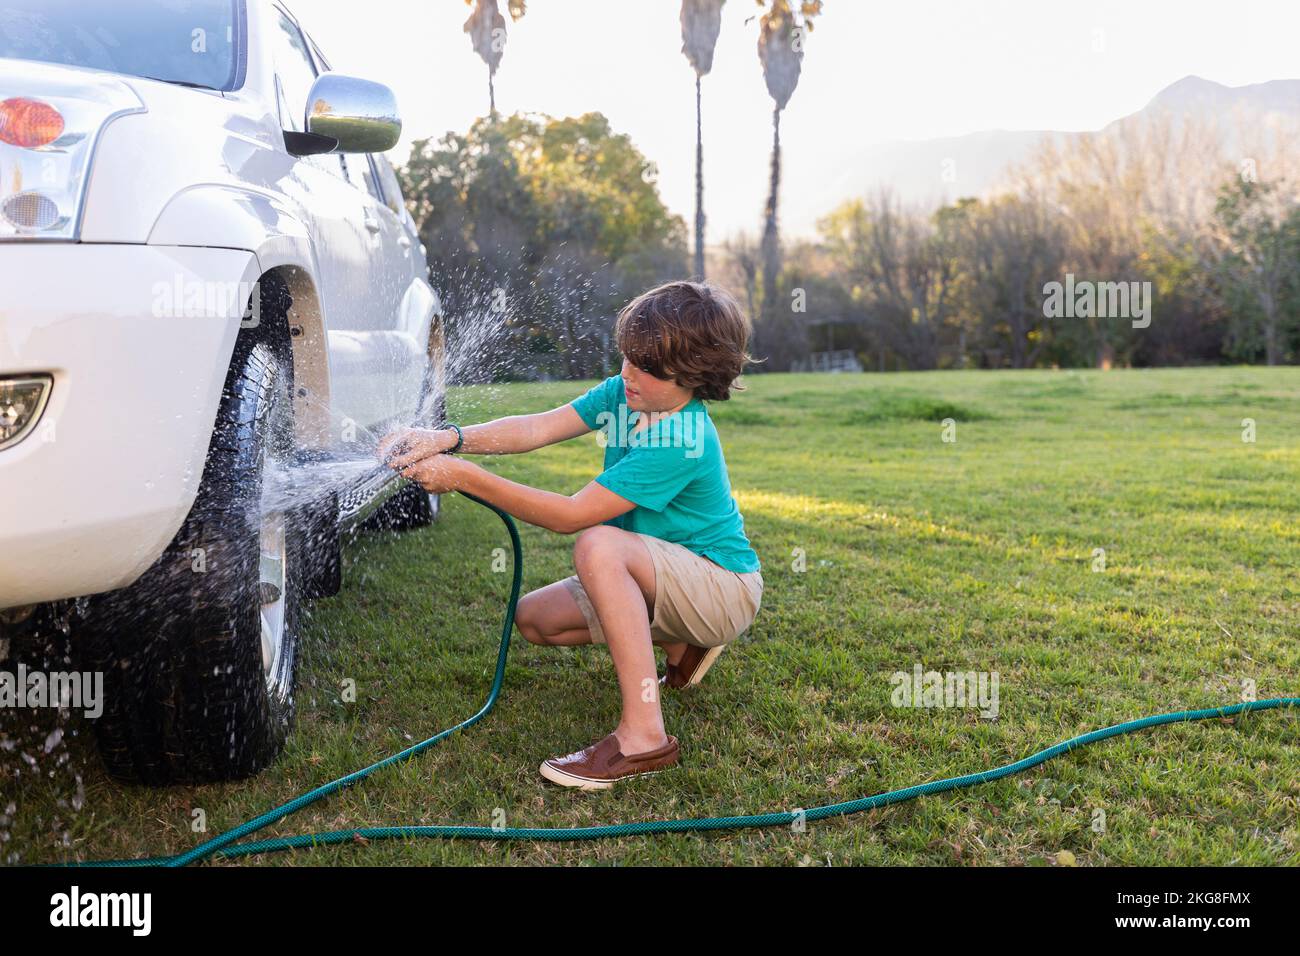 Afrique du Sud, Stanford, Boy (8-9) roue de lavage de SUV sur pelouse verte Banque D'Images